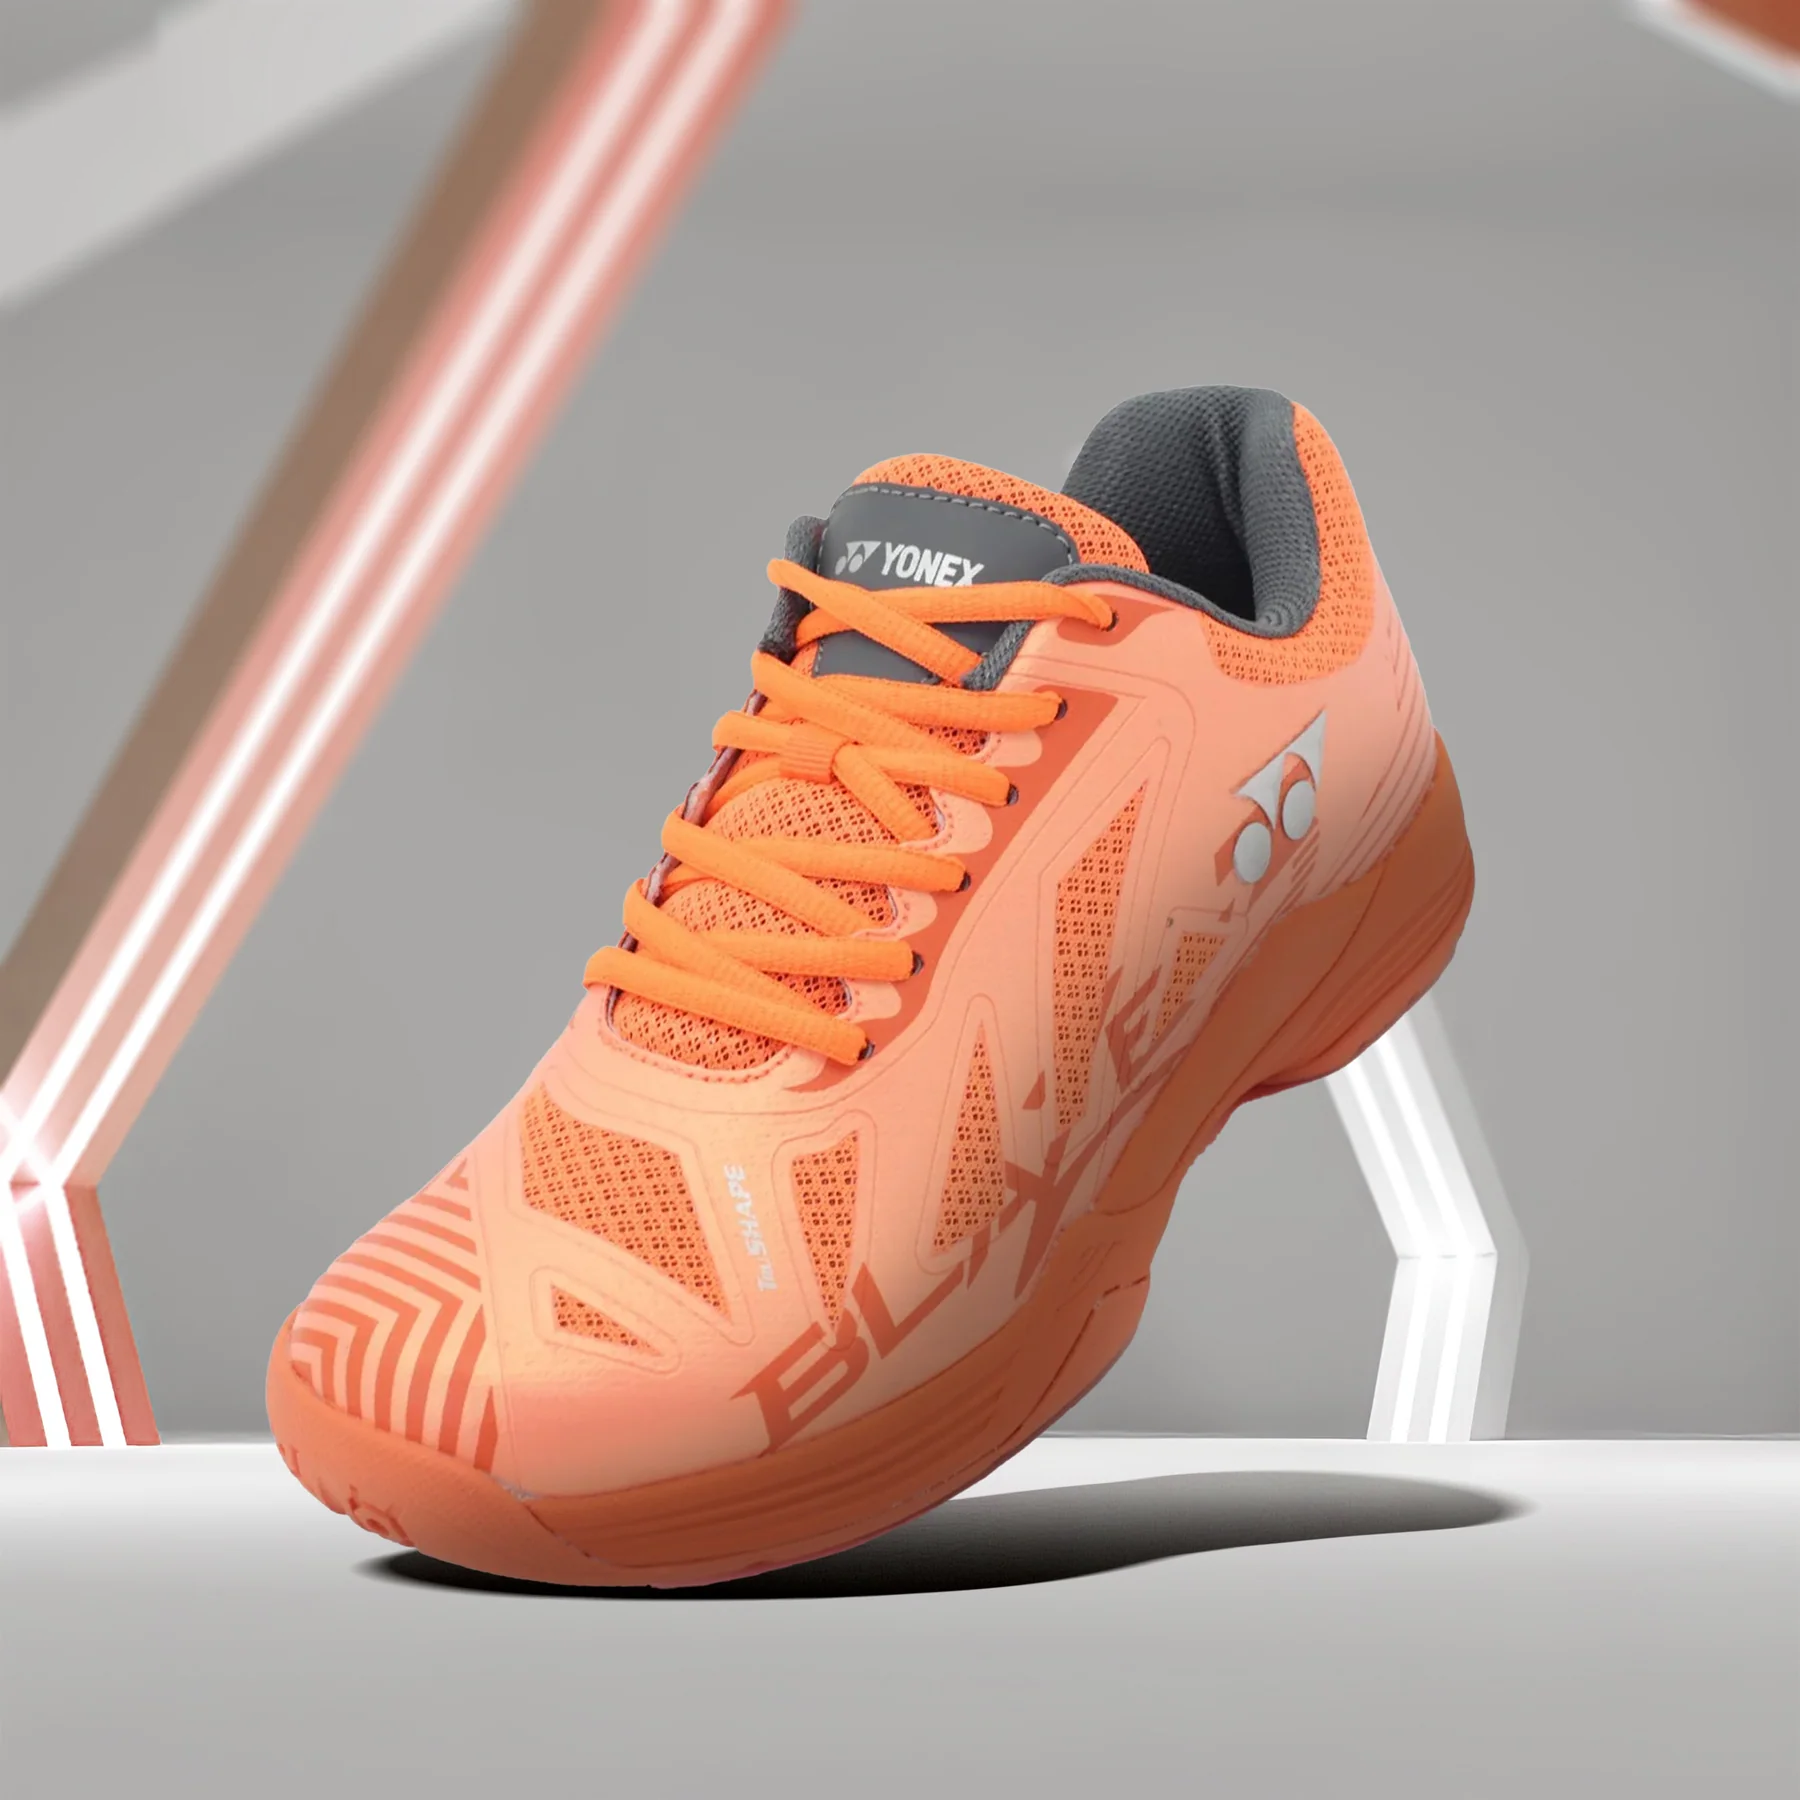 Giày cầu lông Yonex Blaze 3 - Orange chính hãng